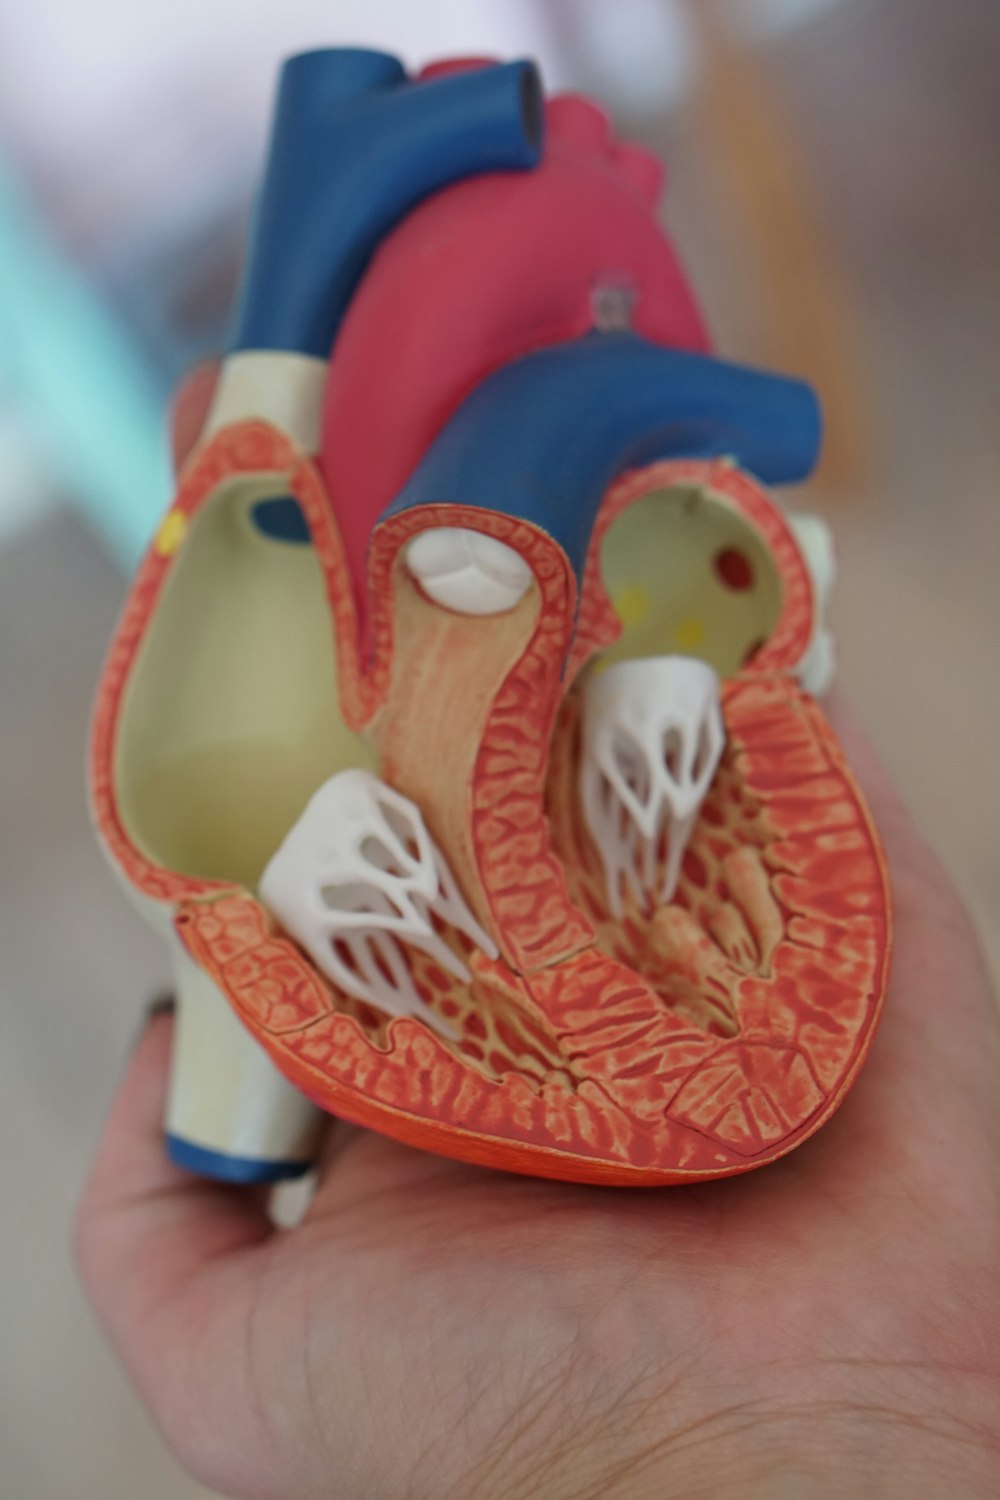 Herramienta de aprendizaje de anatomía del corazón humano